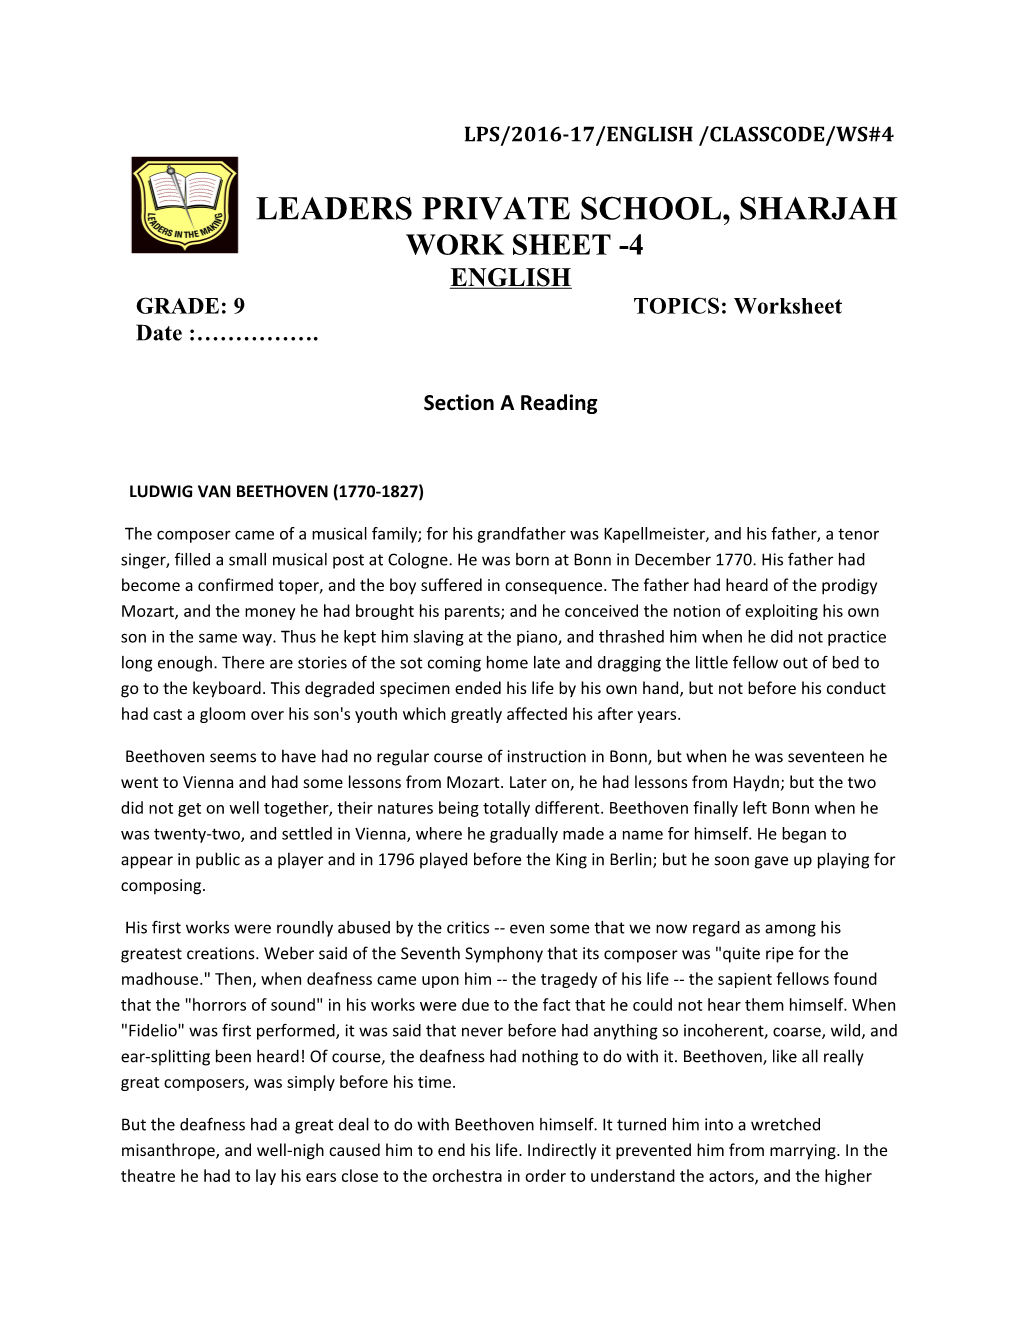 Leaders Private School, Sharjah